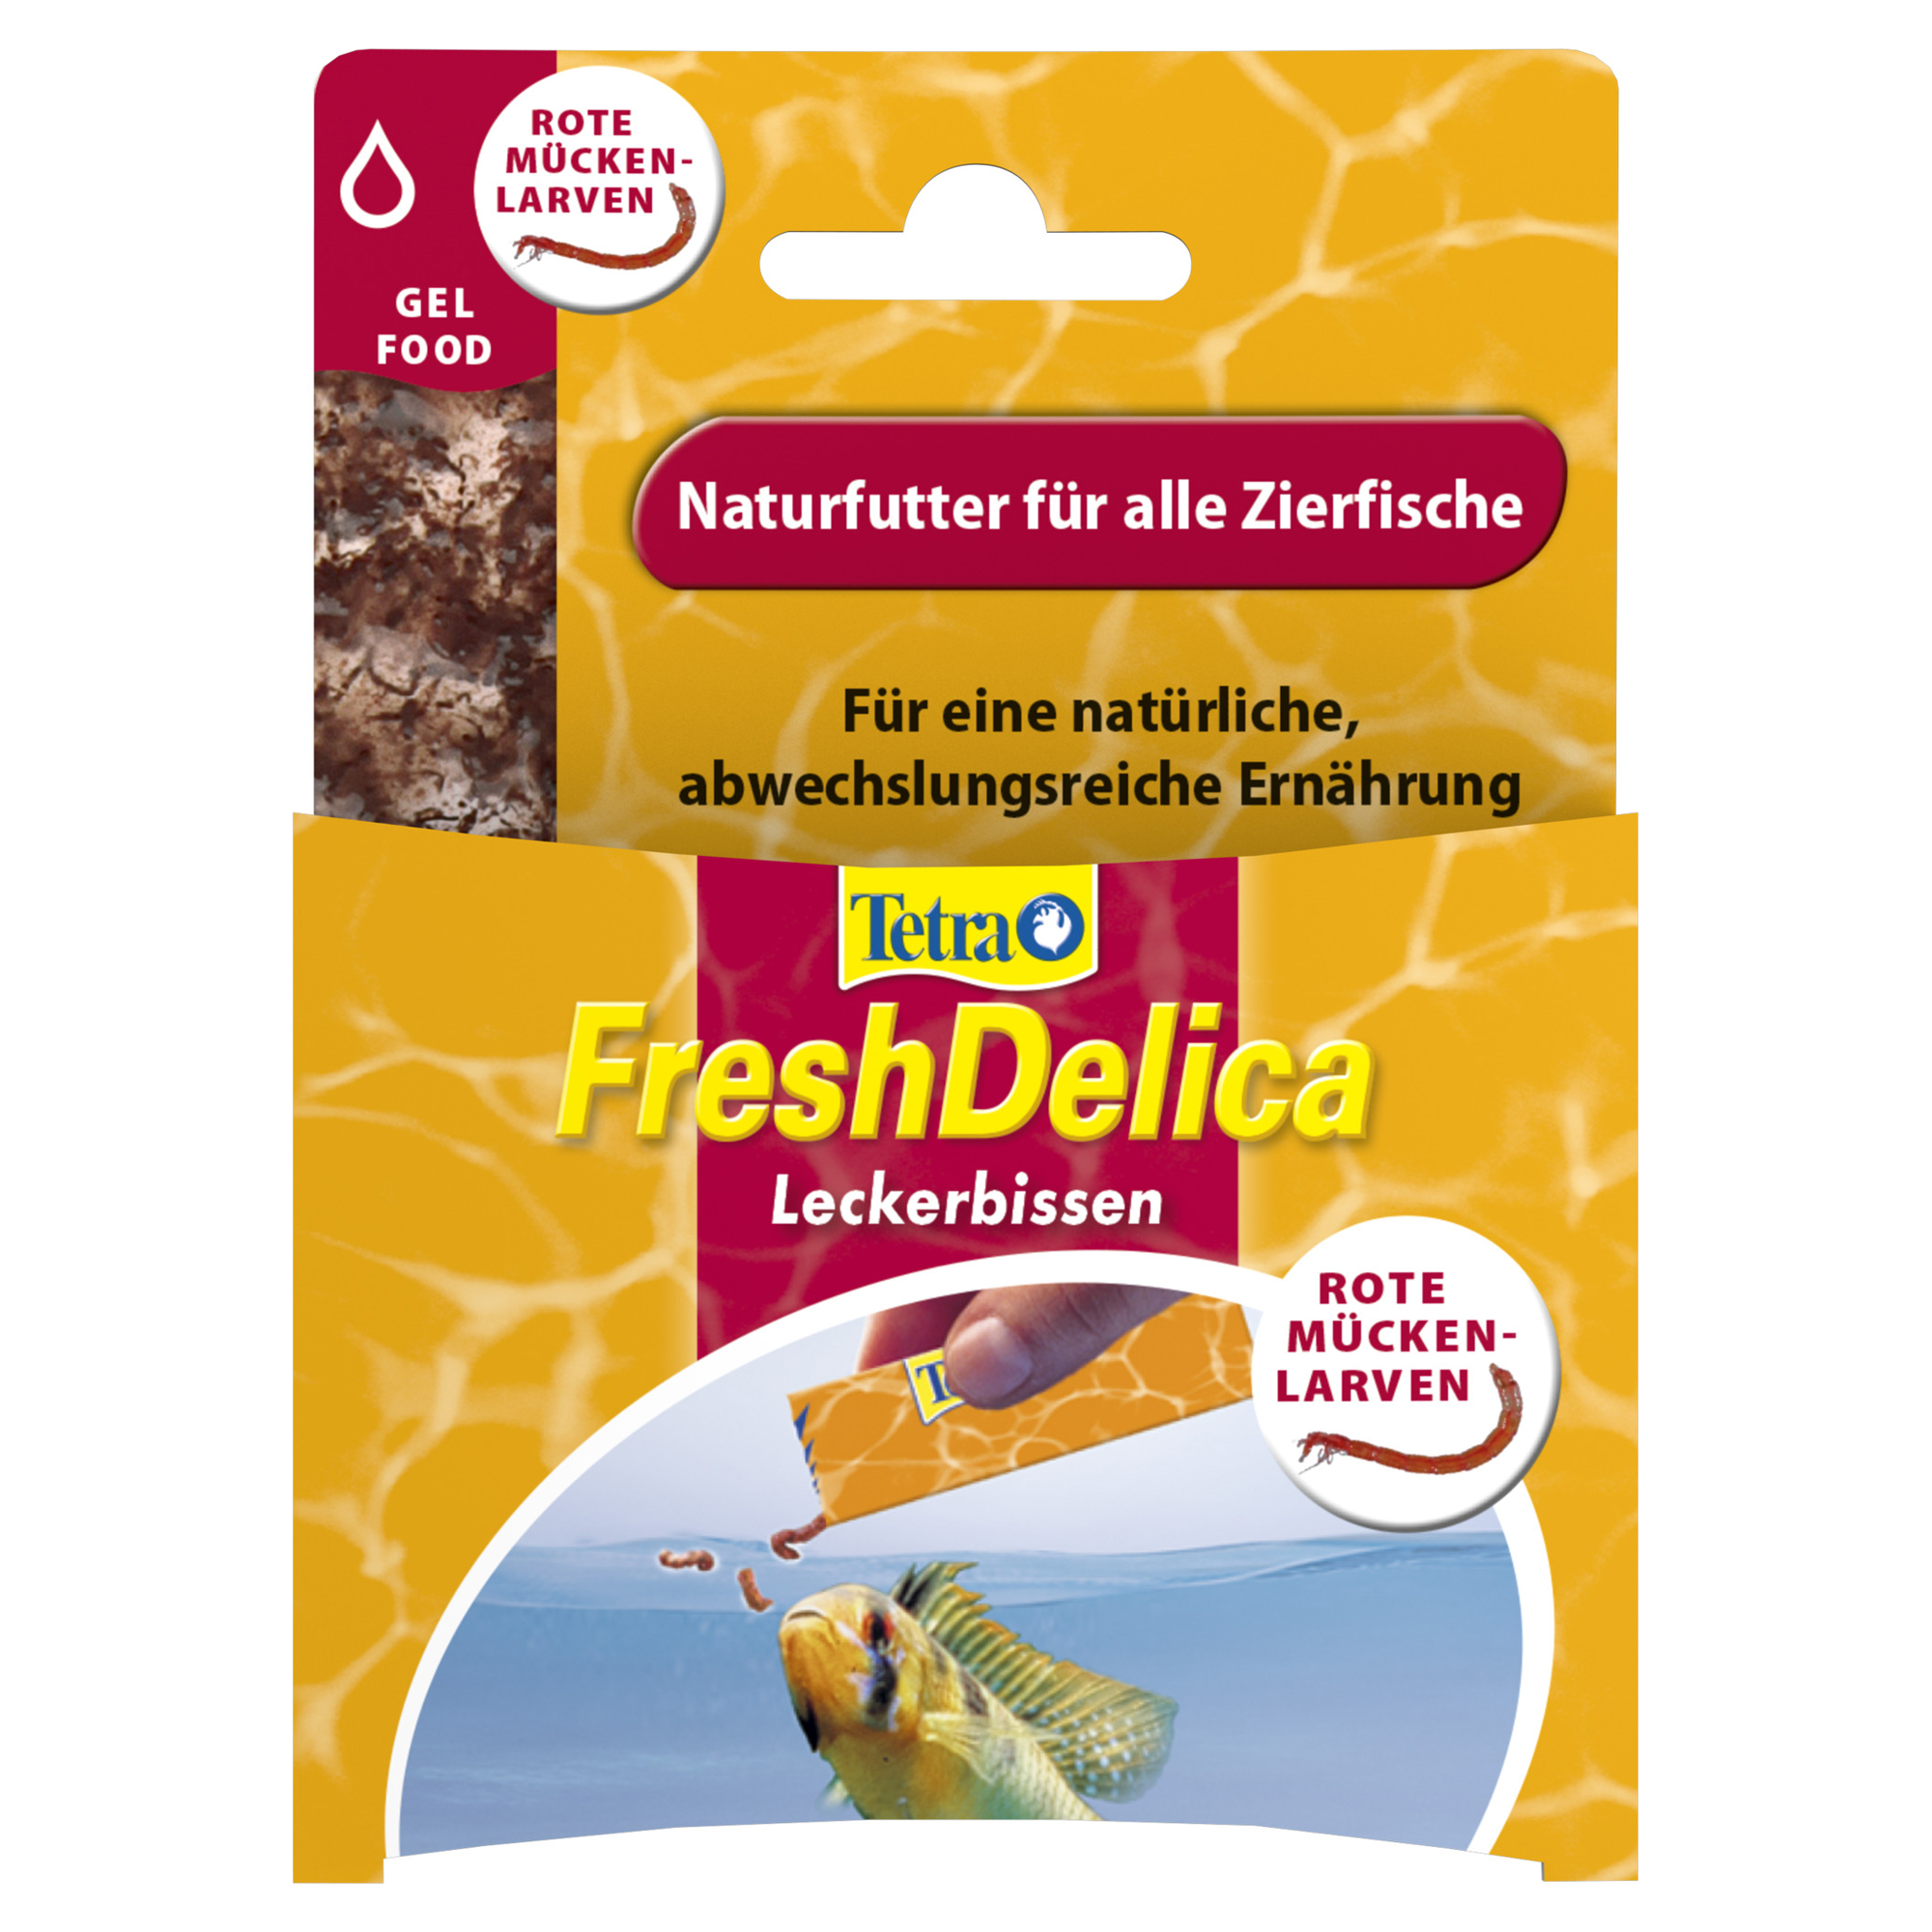 Fischfutter "Fresh Delica" 48 g Leckerbissen Rote Mückenlarven + product picture